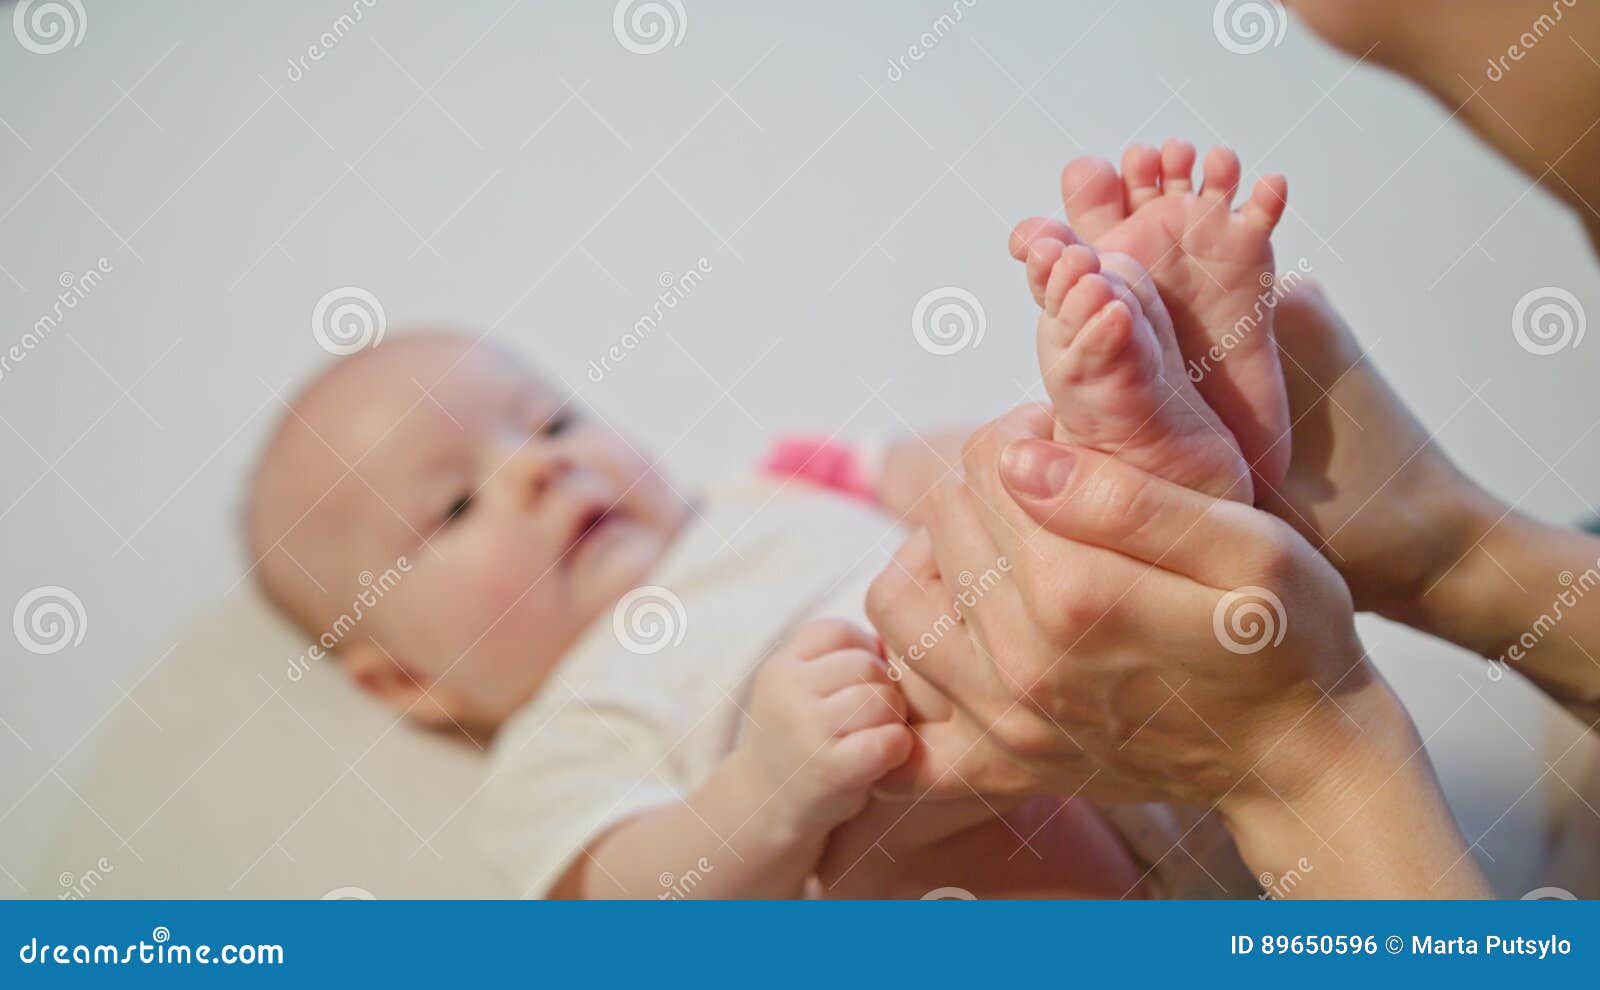 Kiss feet дети. Ребенок целует ноги. Ножки младенца с поцелуем. Целует маленькие детские стопы.